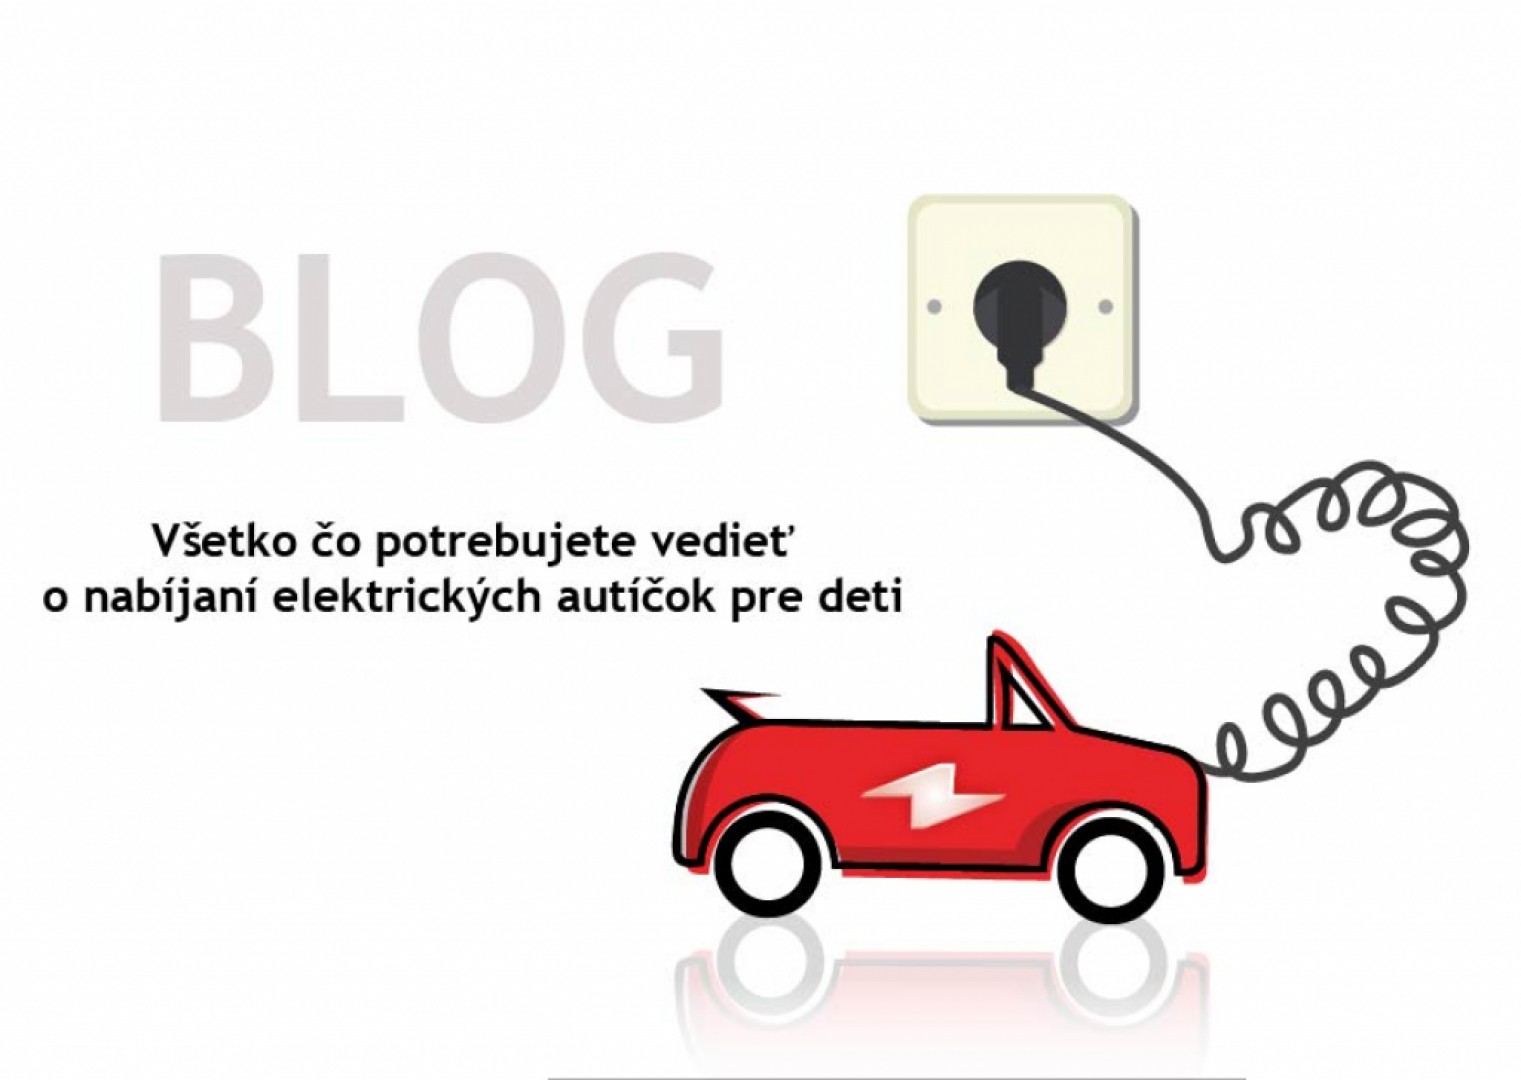 Elektrické autíčko - ako ho nabíjať? | autapredeti.sk